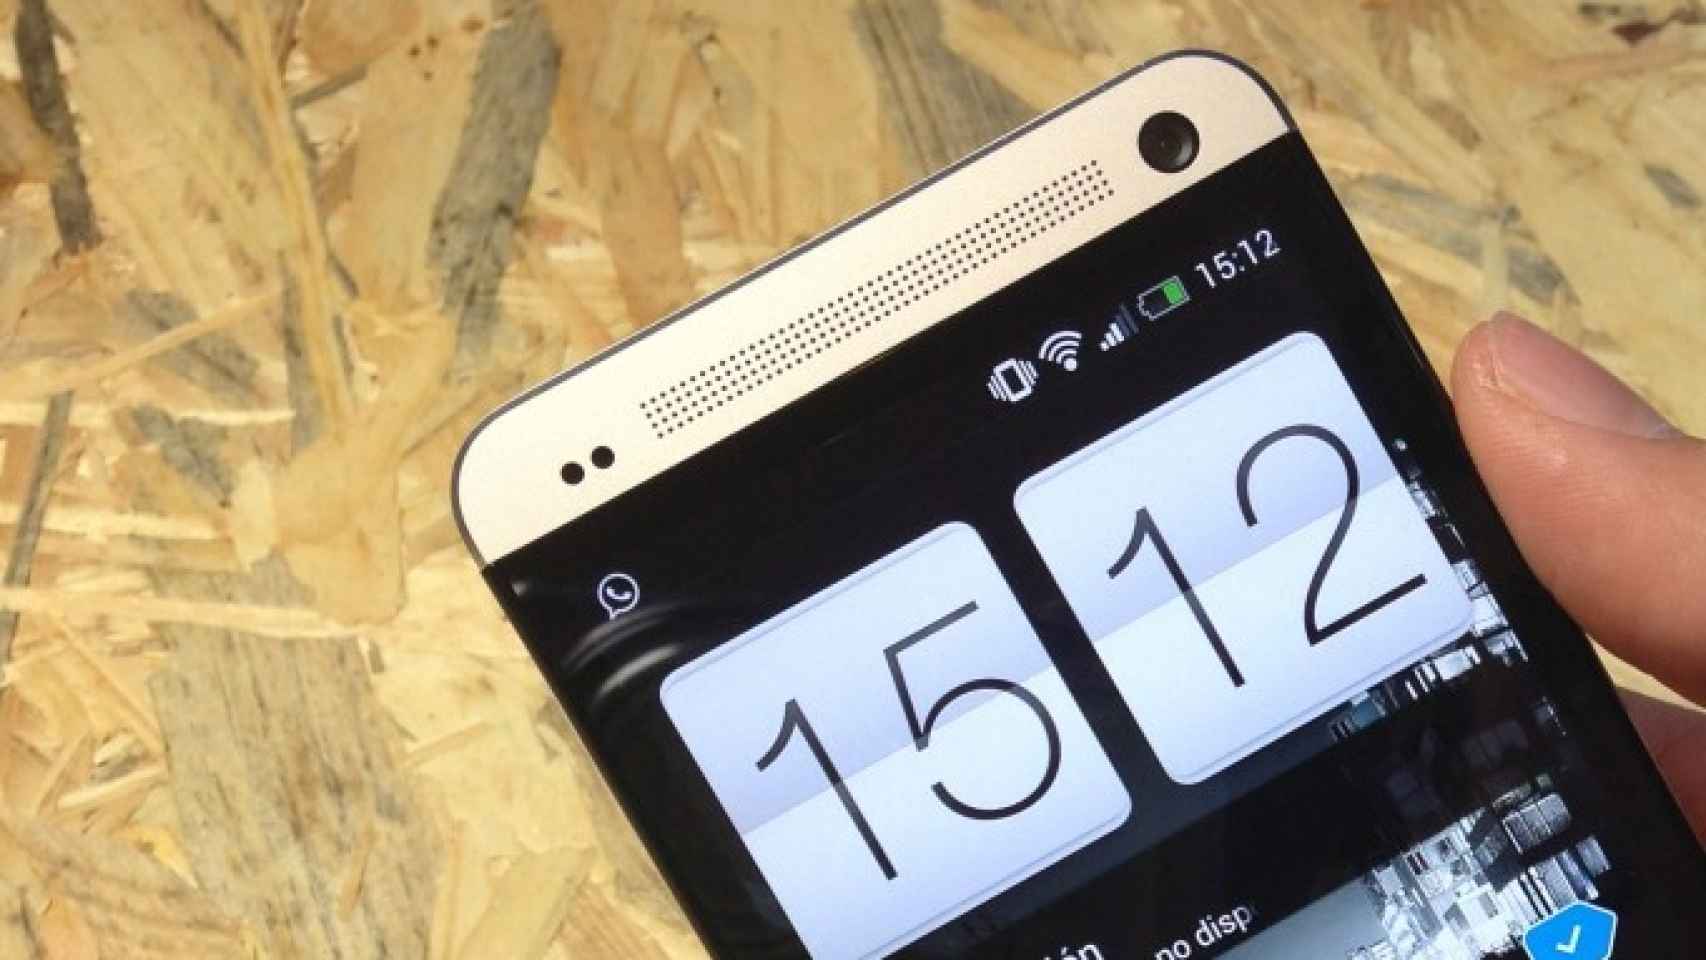 HTC One en Yoigo, precios y tarifas